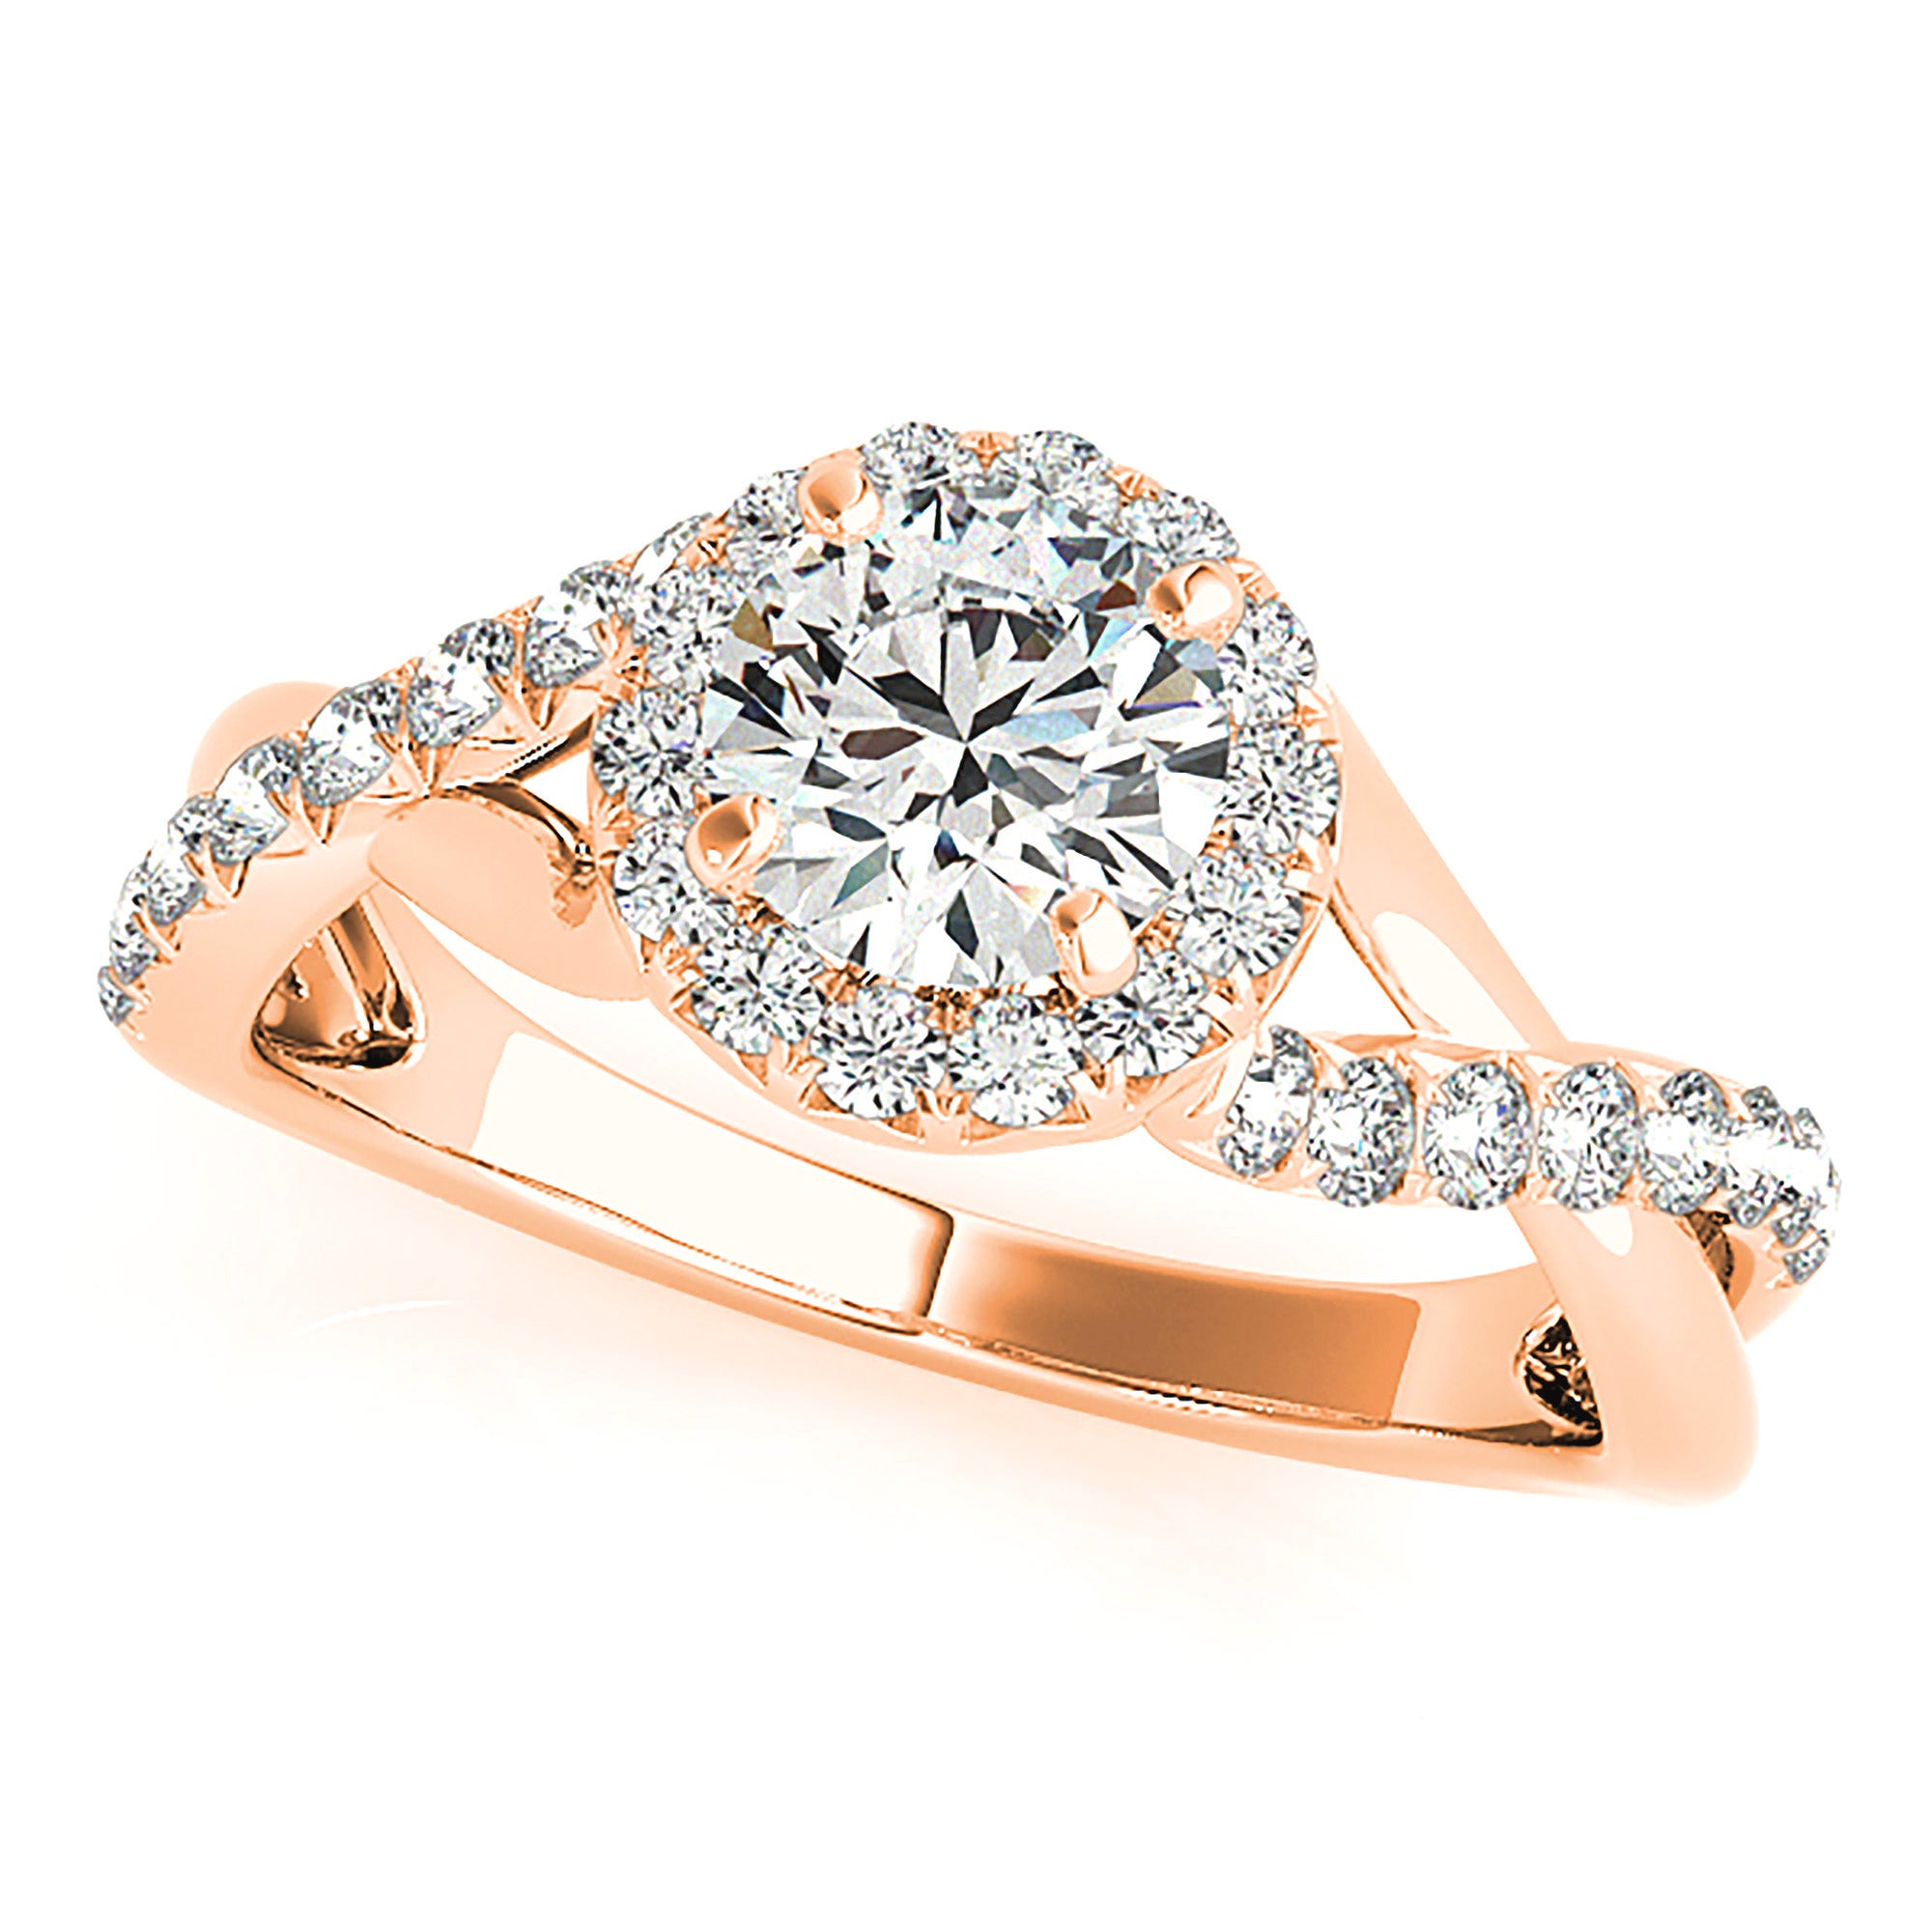 Halo Round Diamond Engagement Ring-in 14K/18K White, Yellow, Rose Gold and Platinum - Christmas Jewelry Gift -VIRABYANI